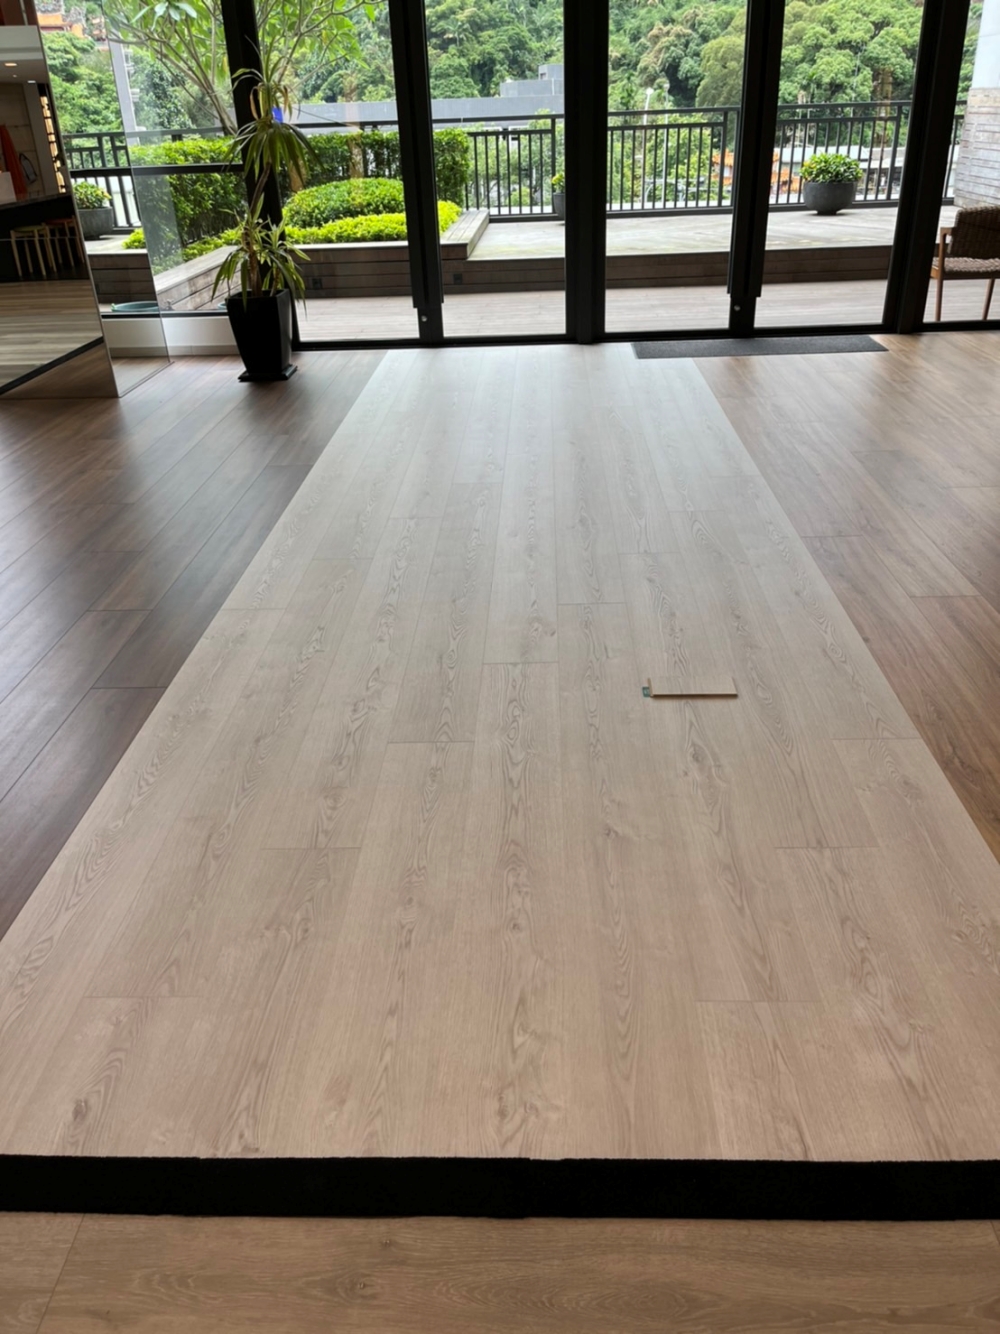 德國MEISTER超耐磨地板展示中心 偏白色木地板 冰島橡木